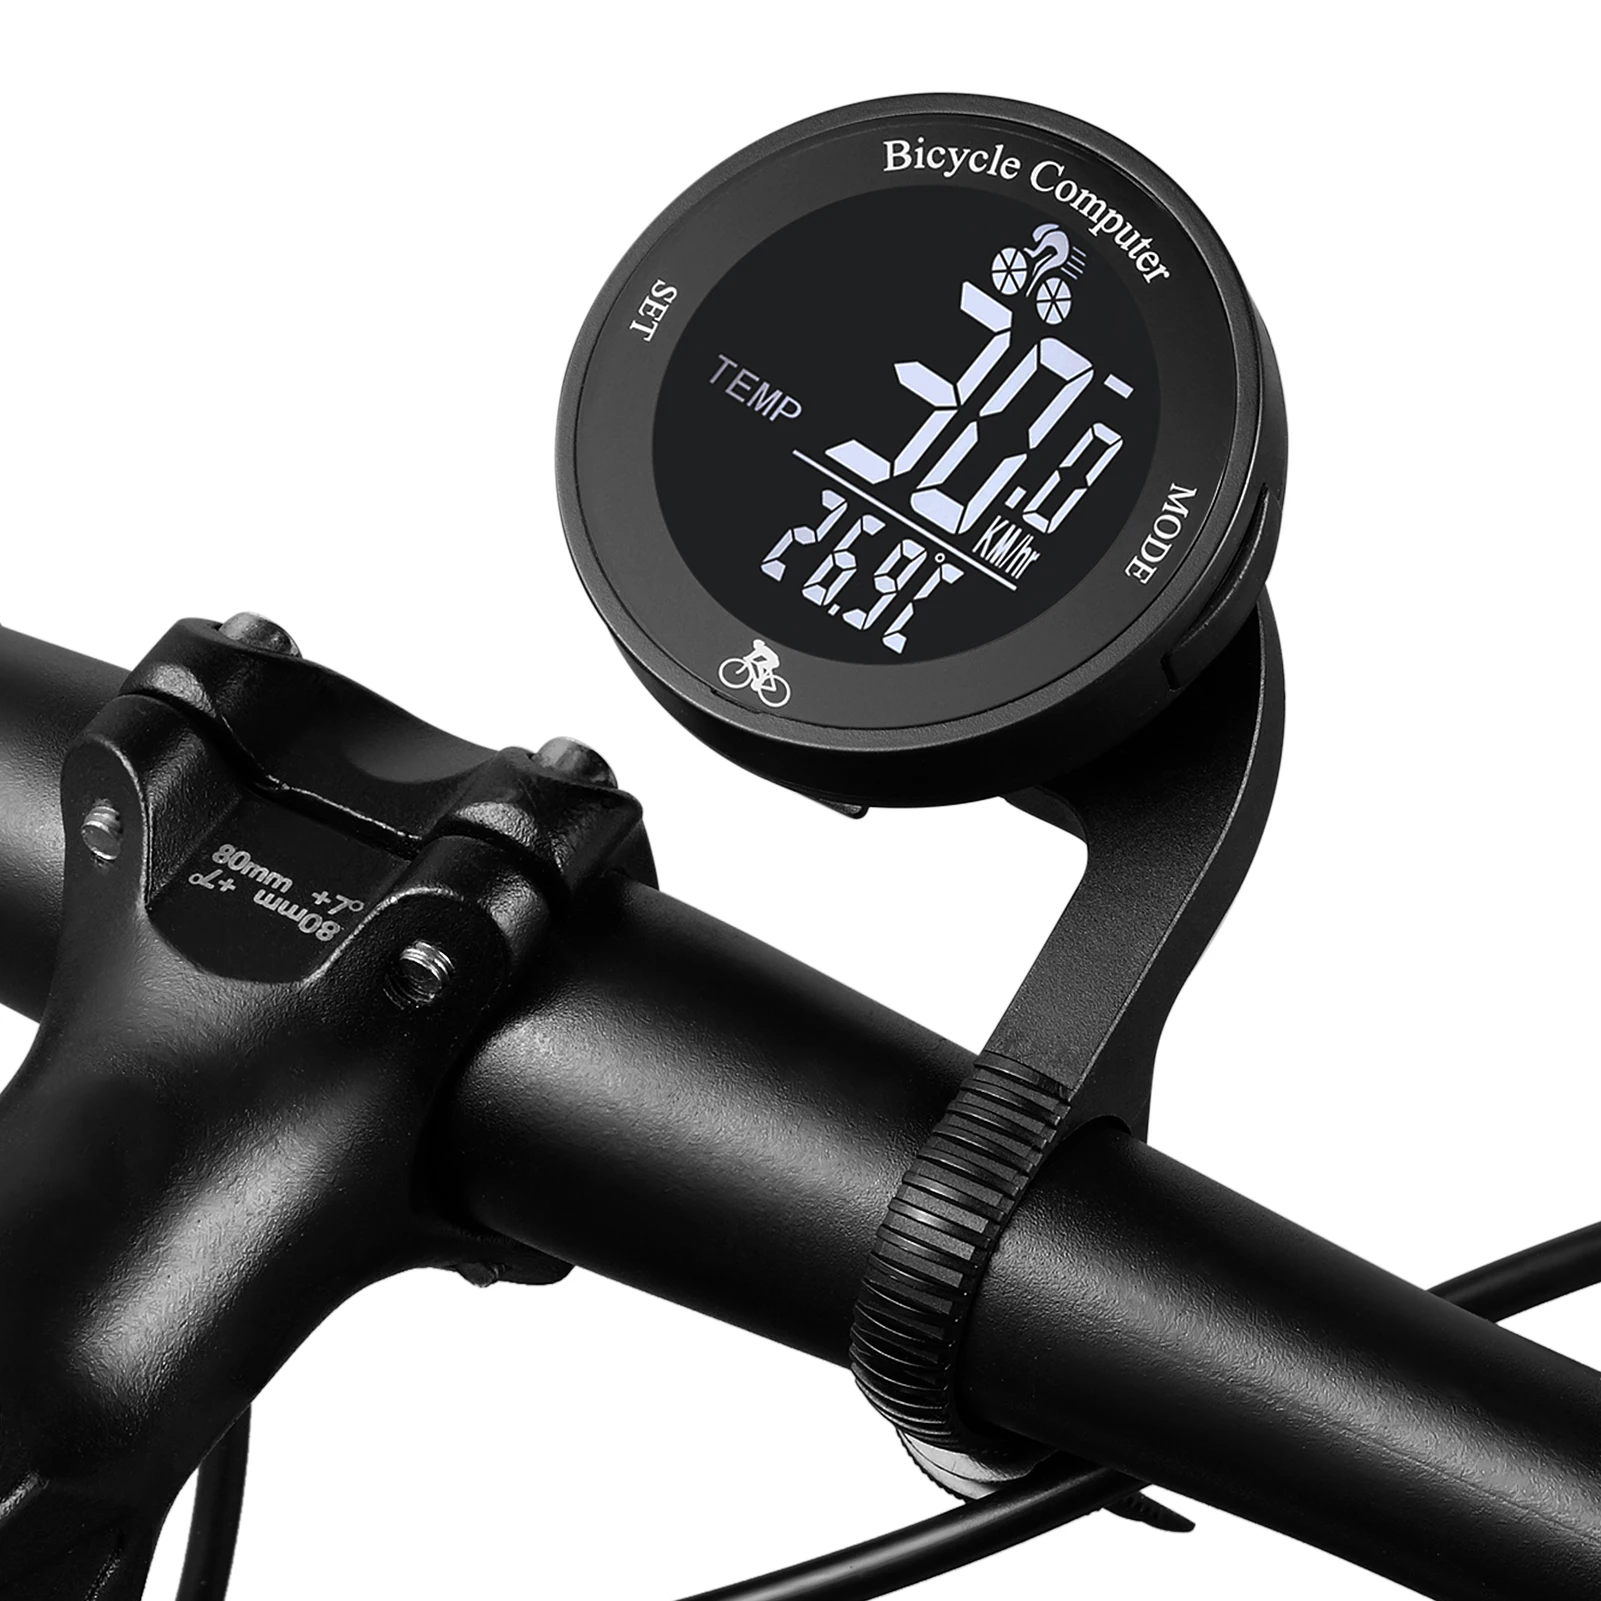 Bicycle Cycle Bike Computer Speedometer Odometer Meter LCD Screen Waterproof C2 